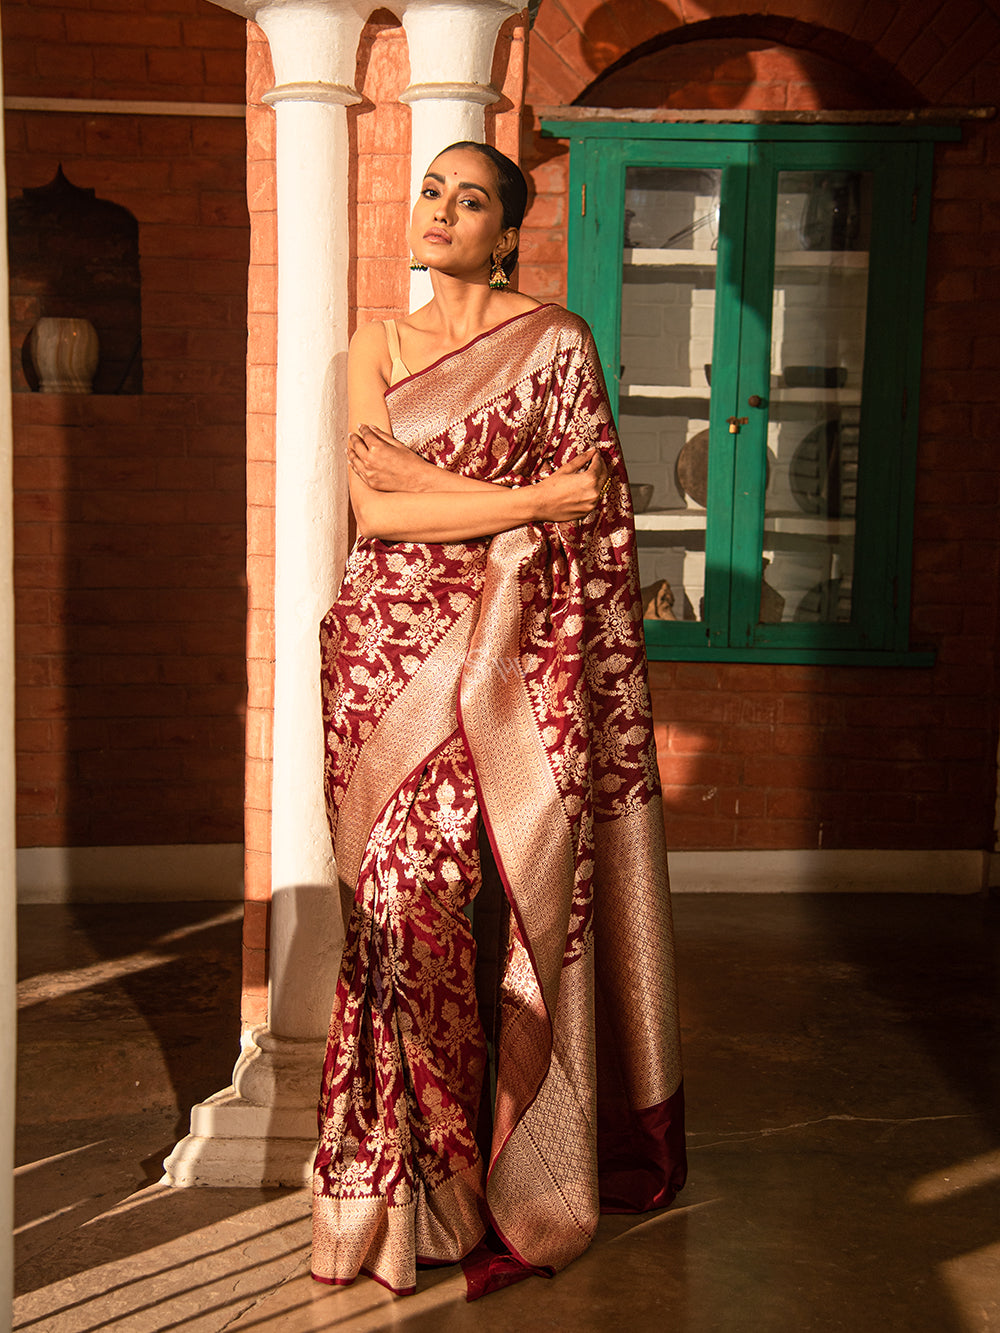 Top 999+ banarasi saree images – Amazing Collection banarasi saree images Full 4K